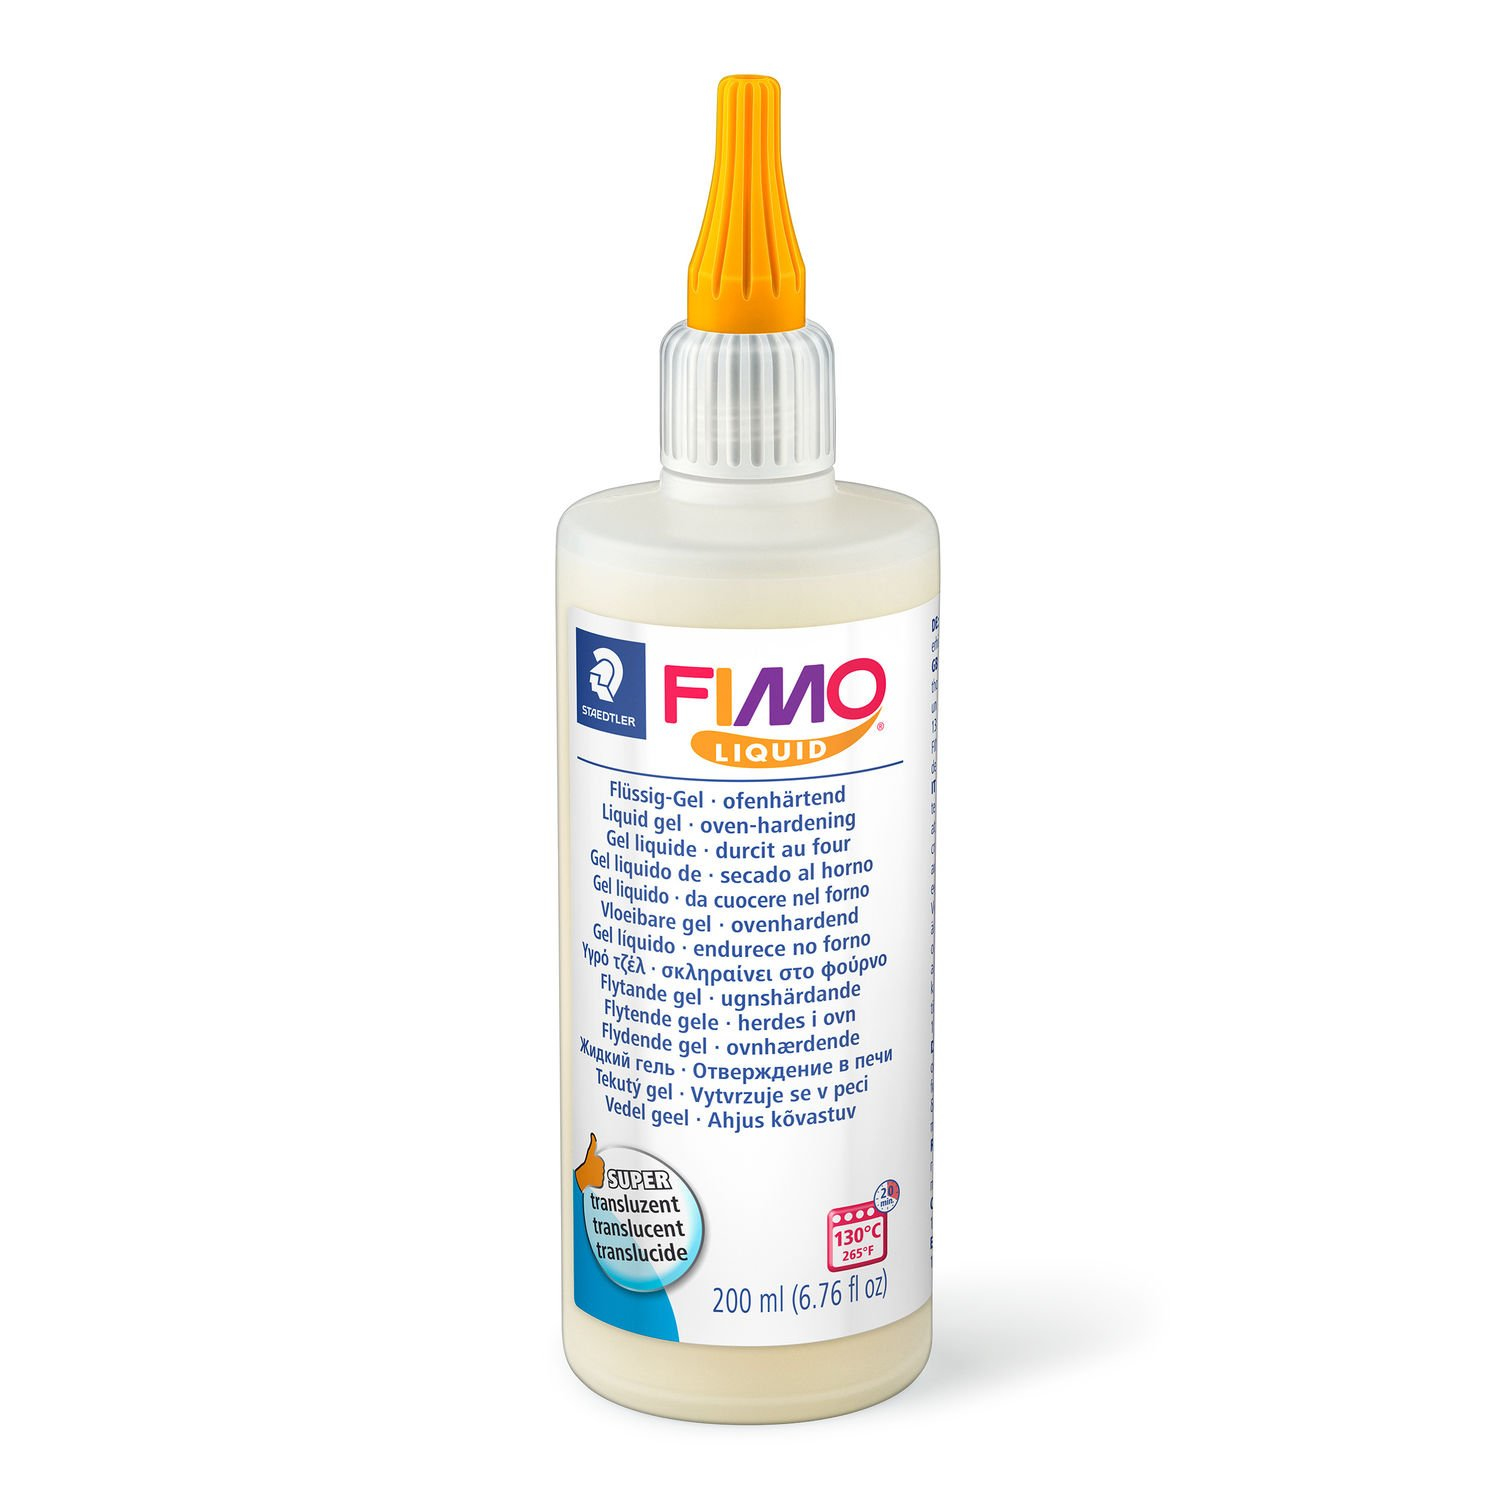 STAEDTLER FIMO 8051 - Dekorier-Gel - Durchscheinend - Erwachsene - 1 Stück(e) - 130 °C - 20 min